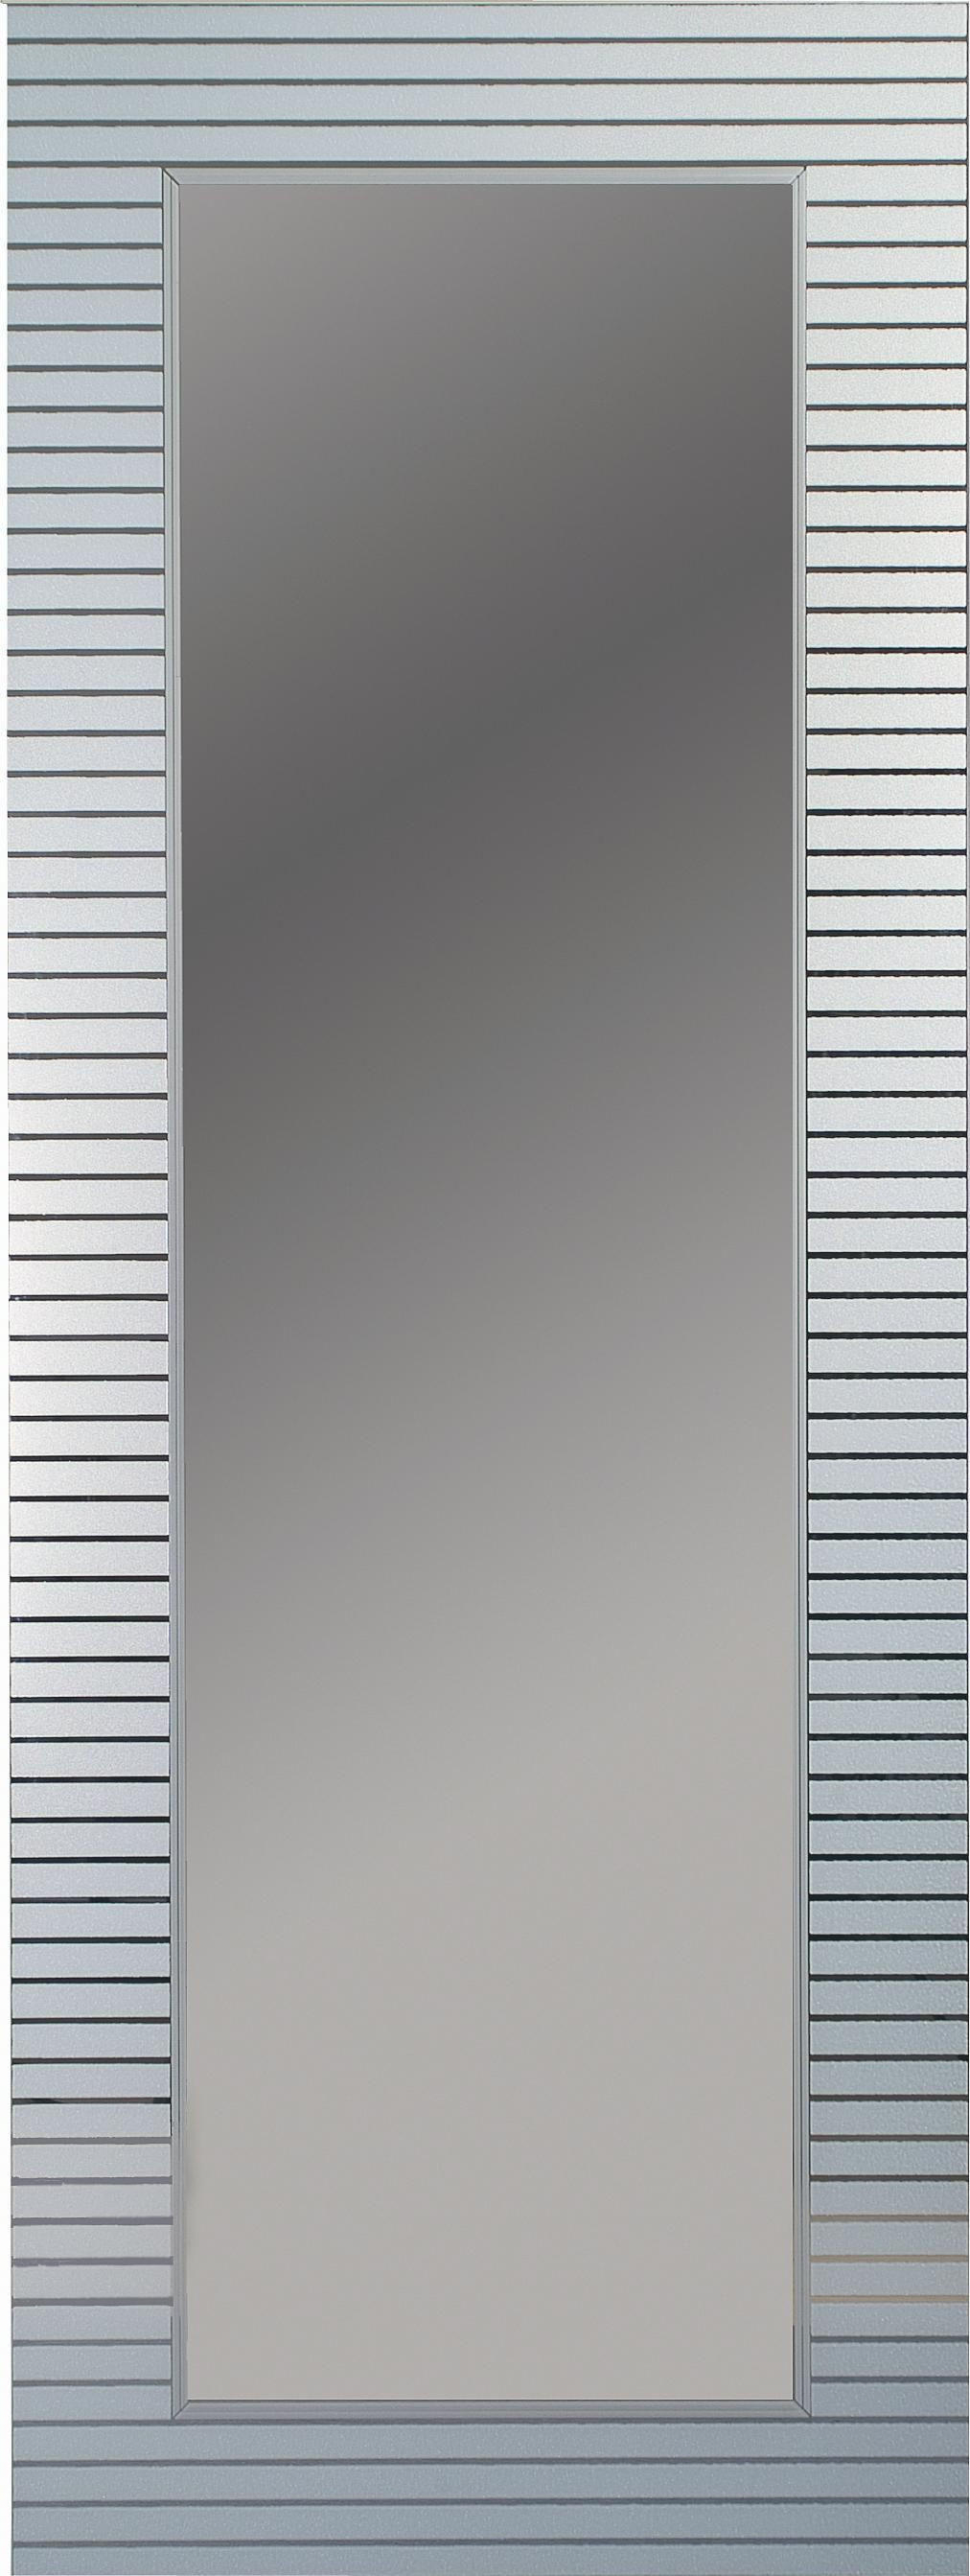 Xora NÁSTĚNNÉ ZRCADLO 50/160/0,3 cm